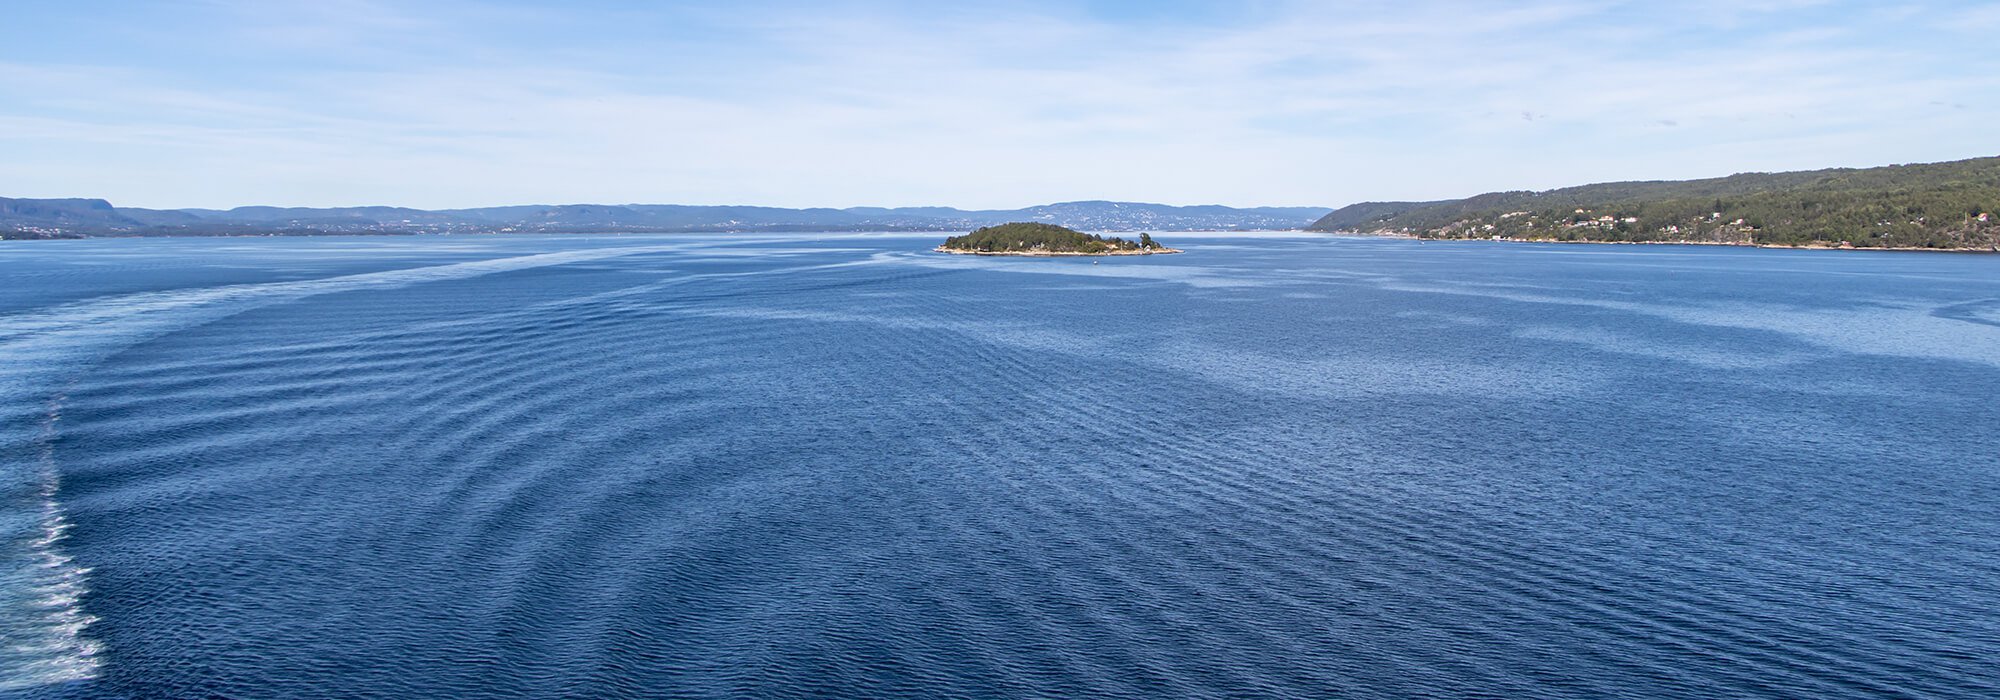 Norwegen Oslo Blick von der Fähre auf Wasser